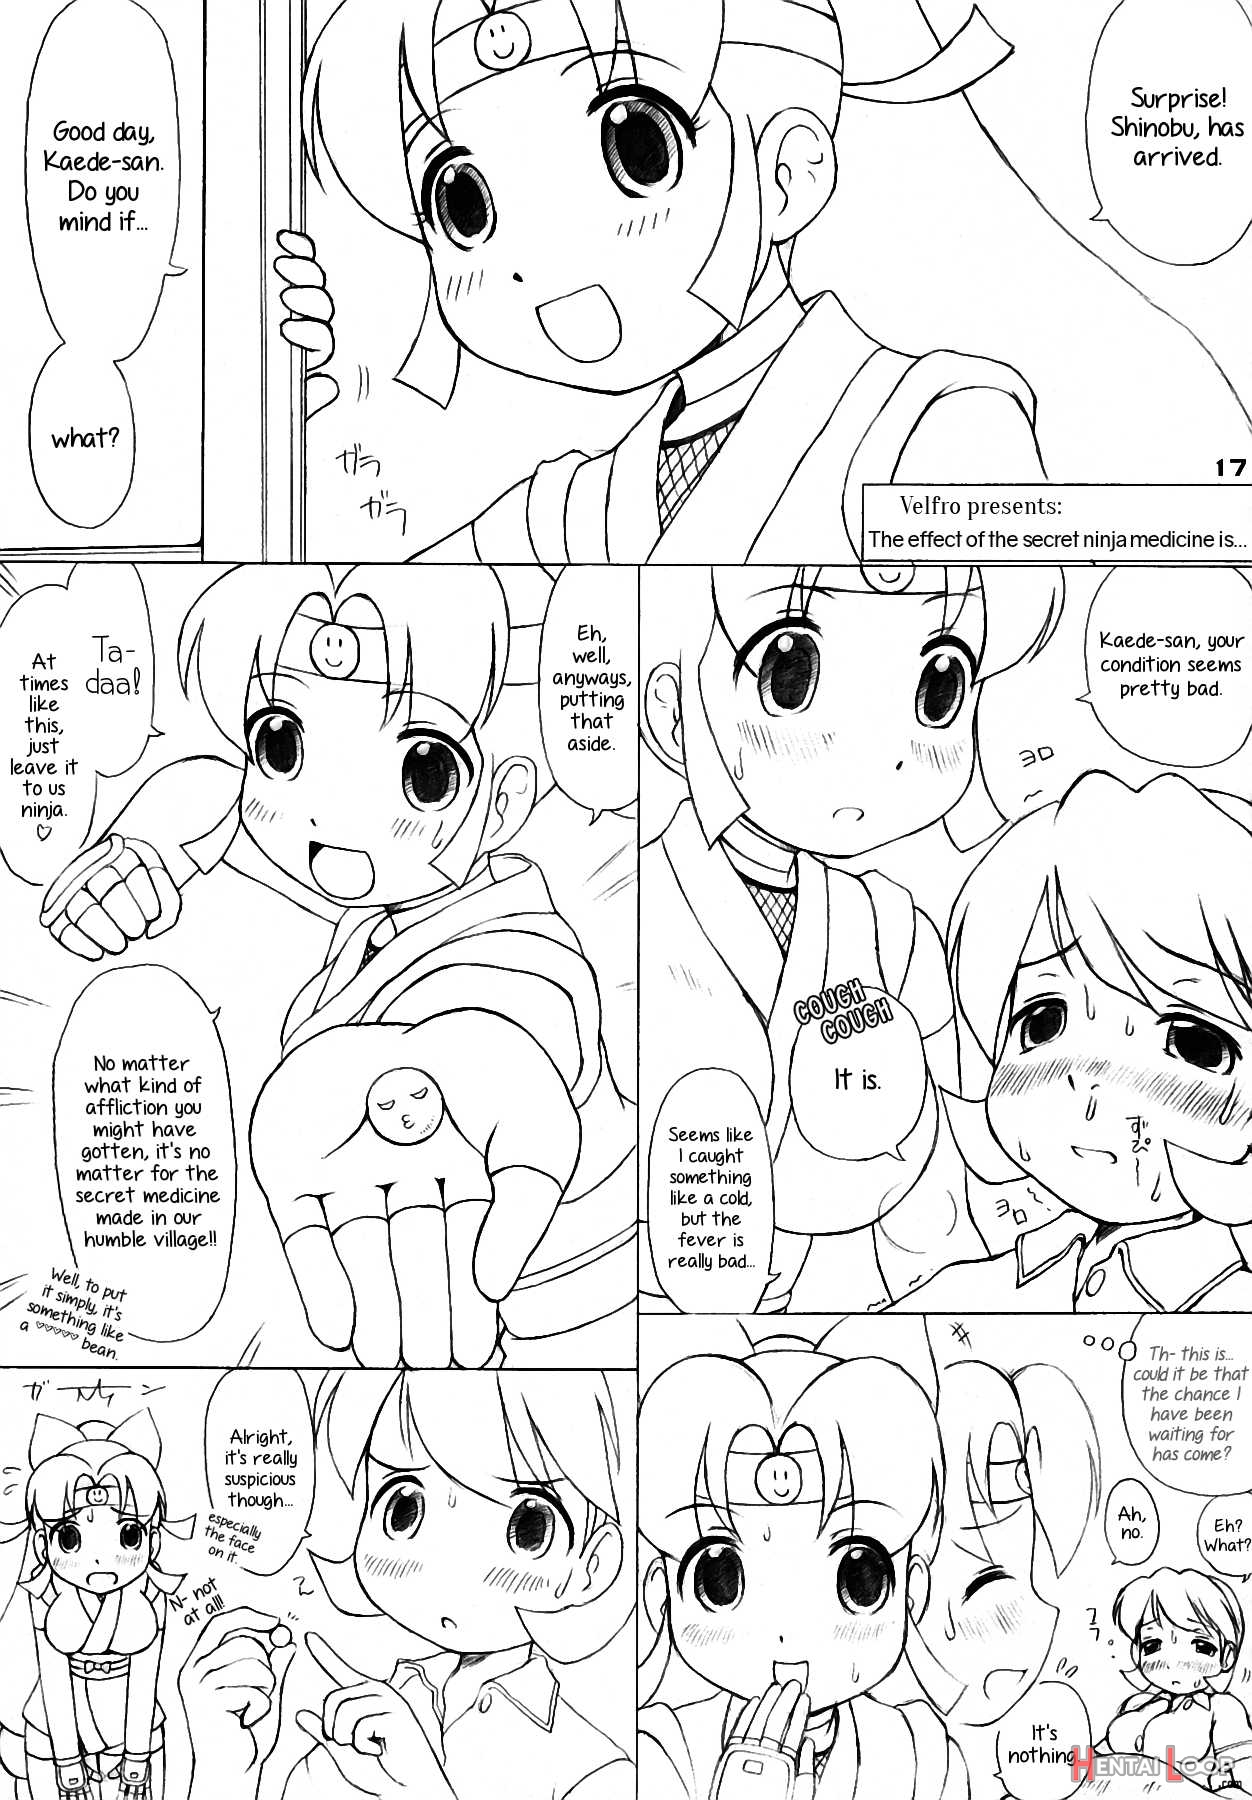 The Super Shinobu page 16